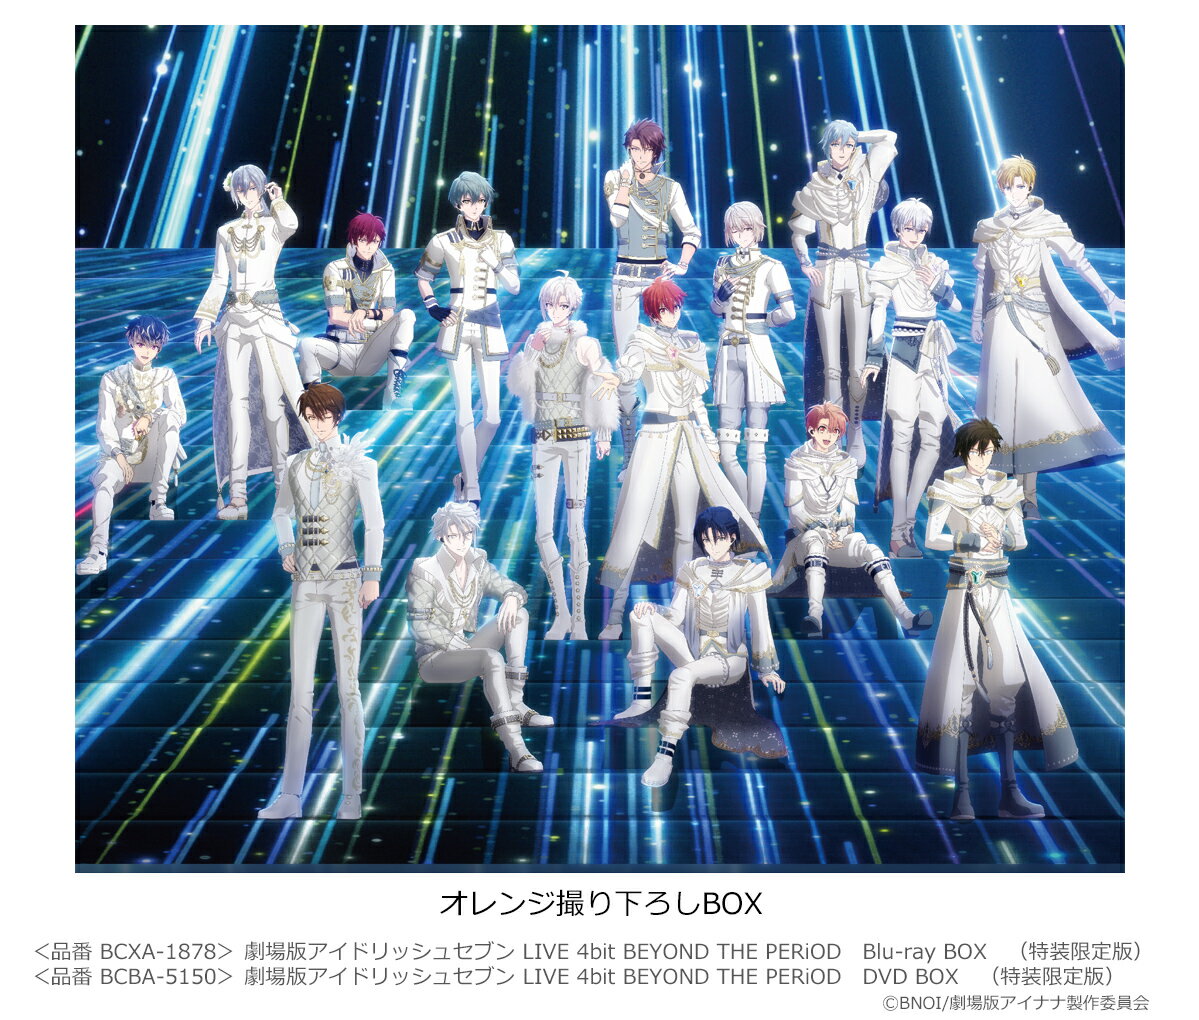 劇場版アイドリッシュセブン LIVE 4bit BEYOND THE PERiOD Blu-ray BOX(特装限定版)【Blu-ray】 バンダイナムコオンライン